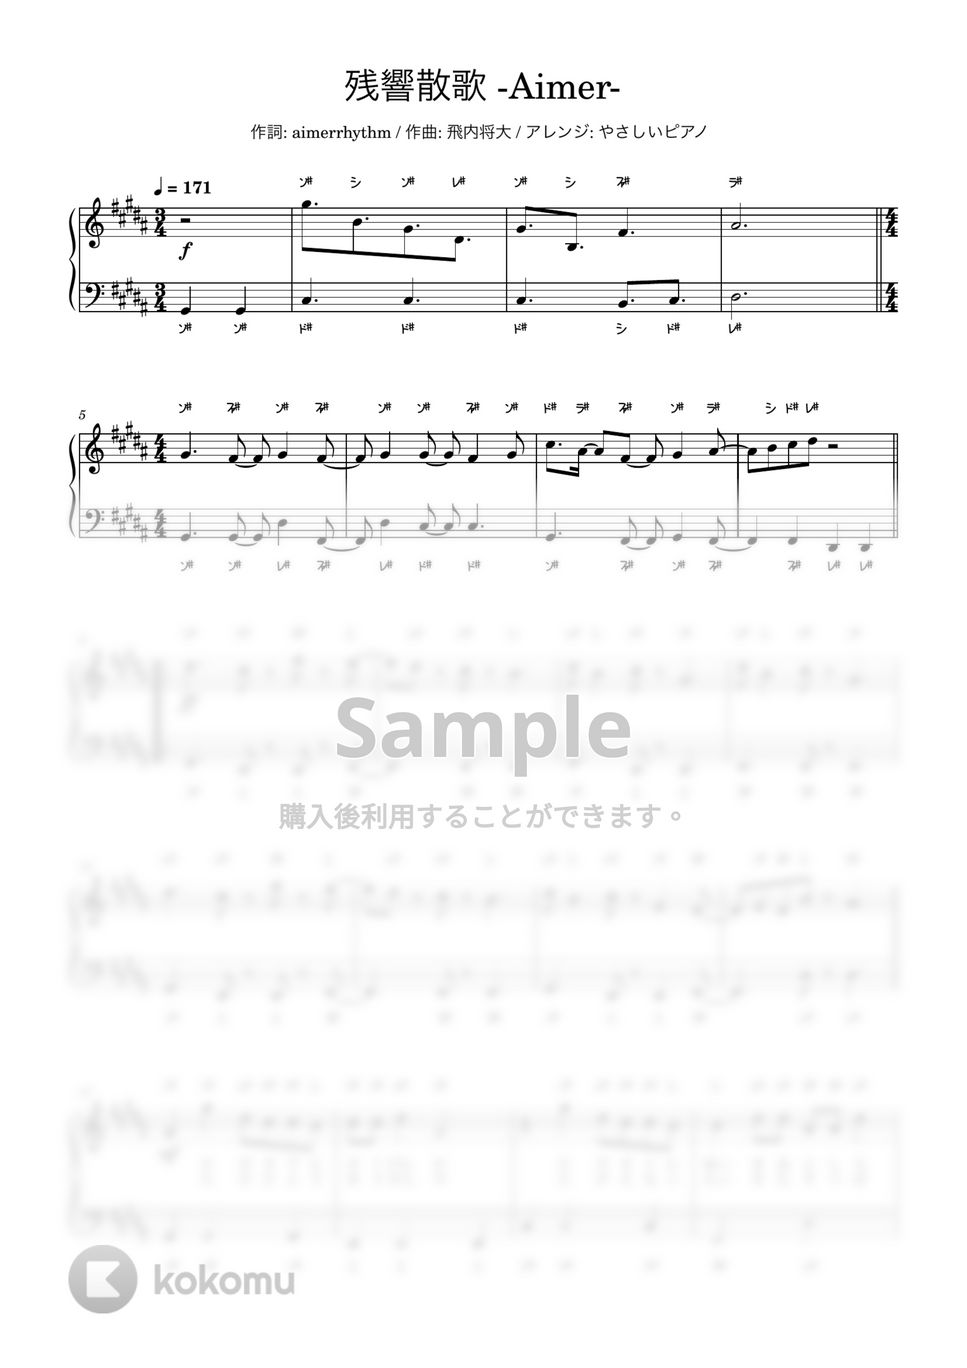 Aimer - 残響散歌(Aimer)入門〜初級 ﾄﾞﾚﾐ付き by やさしいピアノ